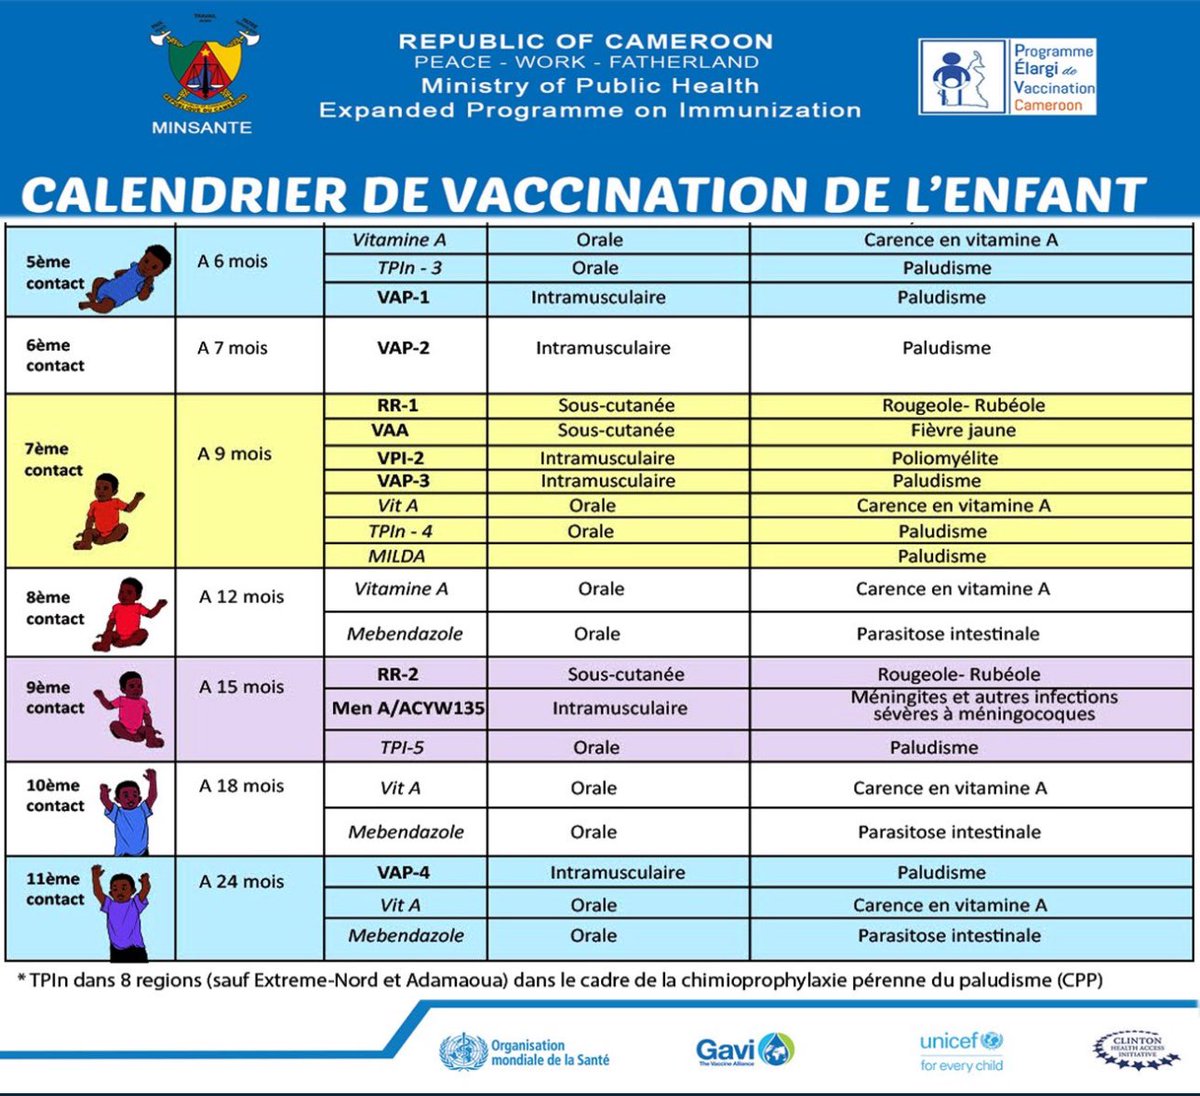 Voici le calendrier vaccinal mis en place par le Programme Élargi de Vaccination du Ministère de la Santé Publique du Cameroun. L’immunisation de nos enfants doit être un devoir et un impératif pour chaque parent. Ces vaccins sont non seulement sûrs et efficaces pour leur